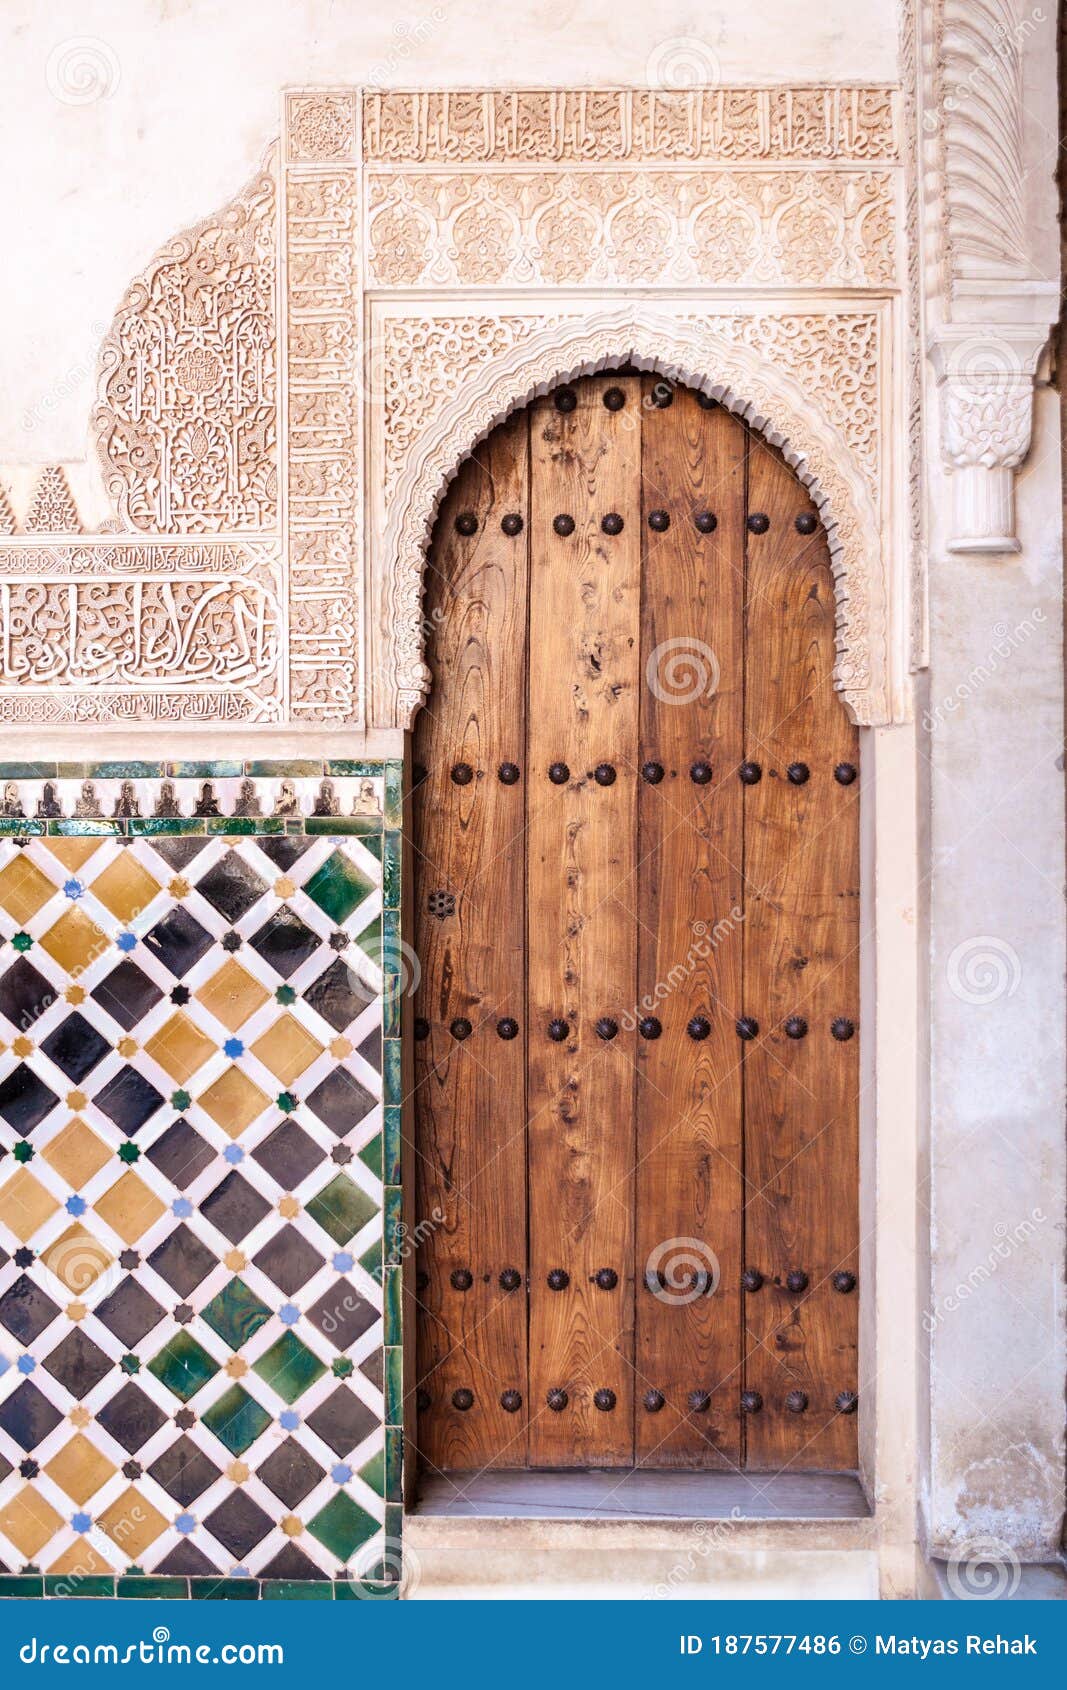 door at nasrid palaces (palacios nazaries) at alhambra in granada, spa